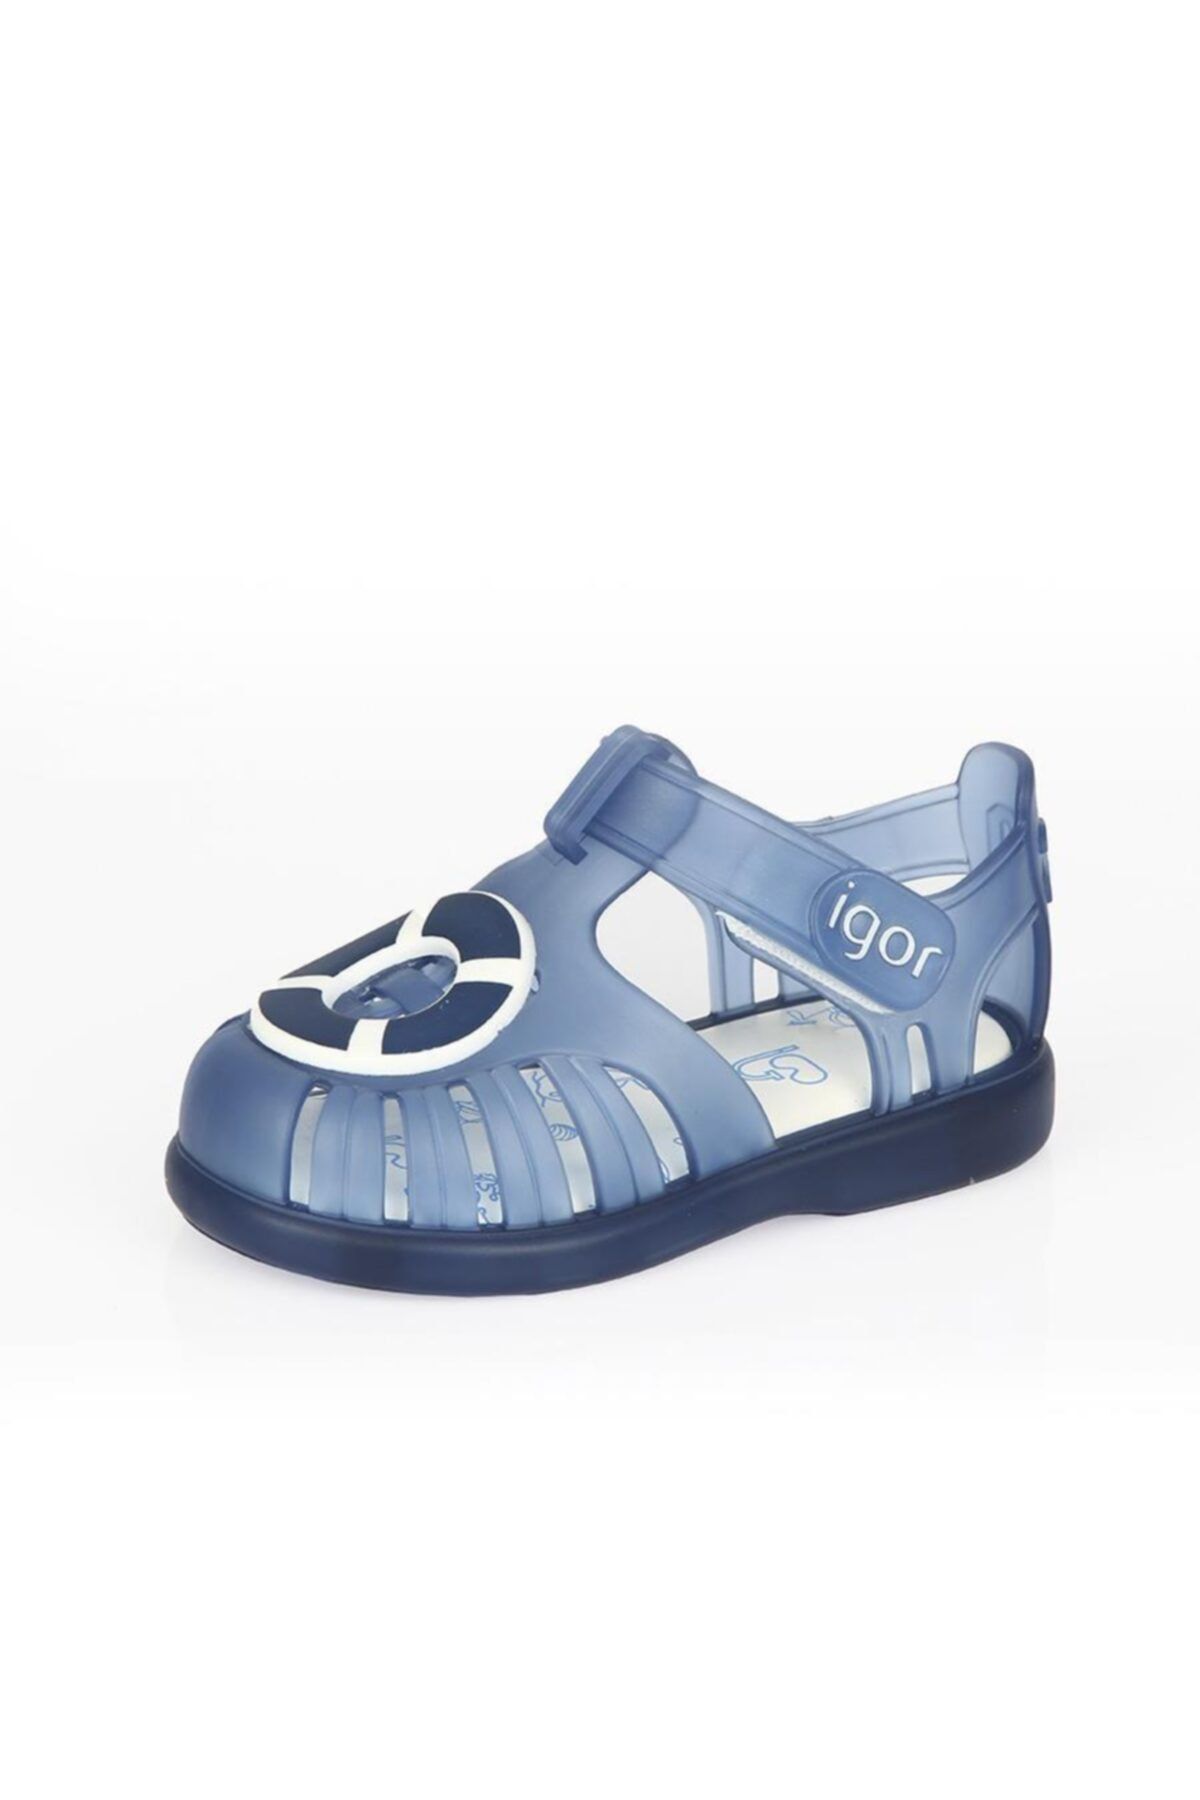 IGOR S10249-003 Tobby Velcro Nautıco Bebek Sandalet